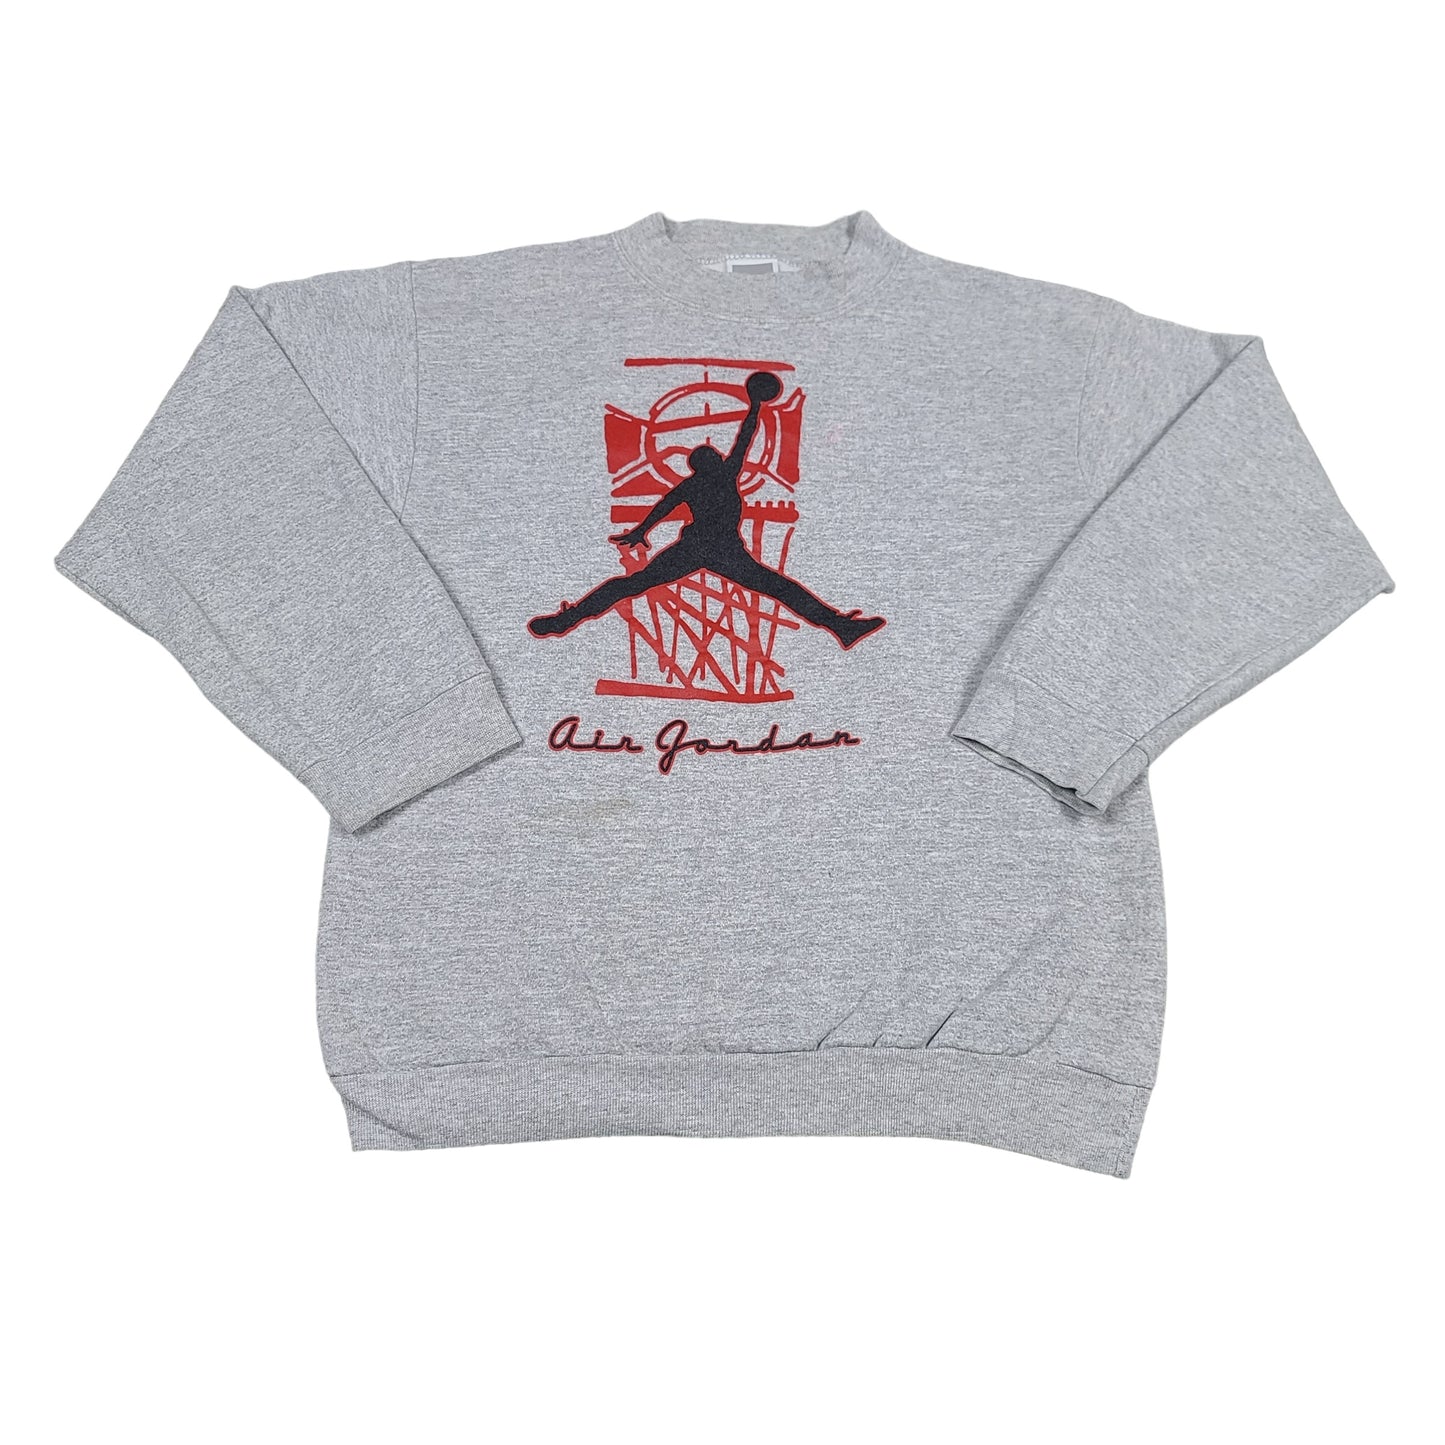 Vintage Nike Air Jordan Gray Youth Sweatshirt